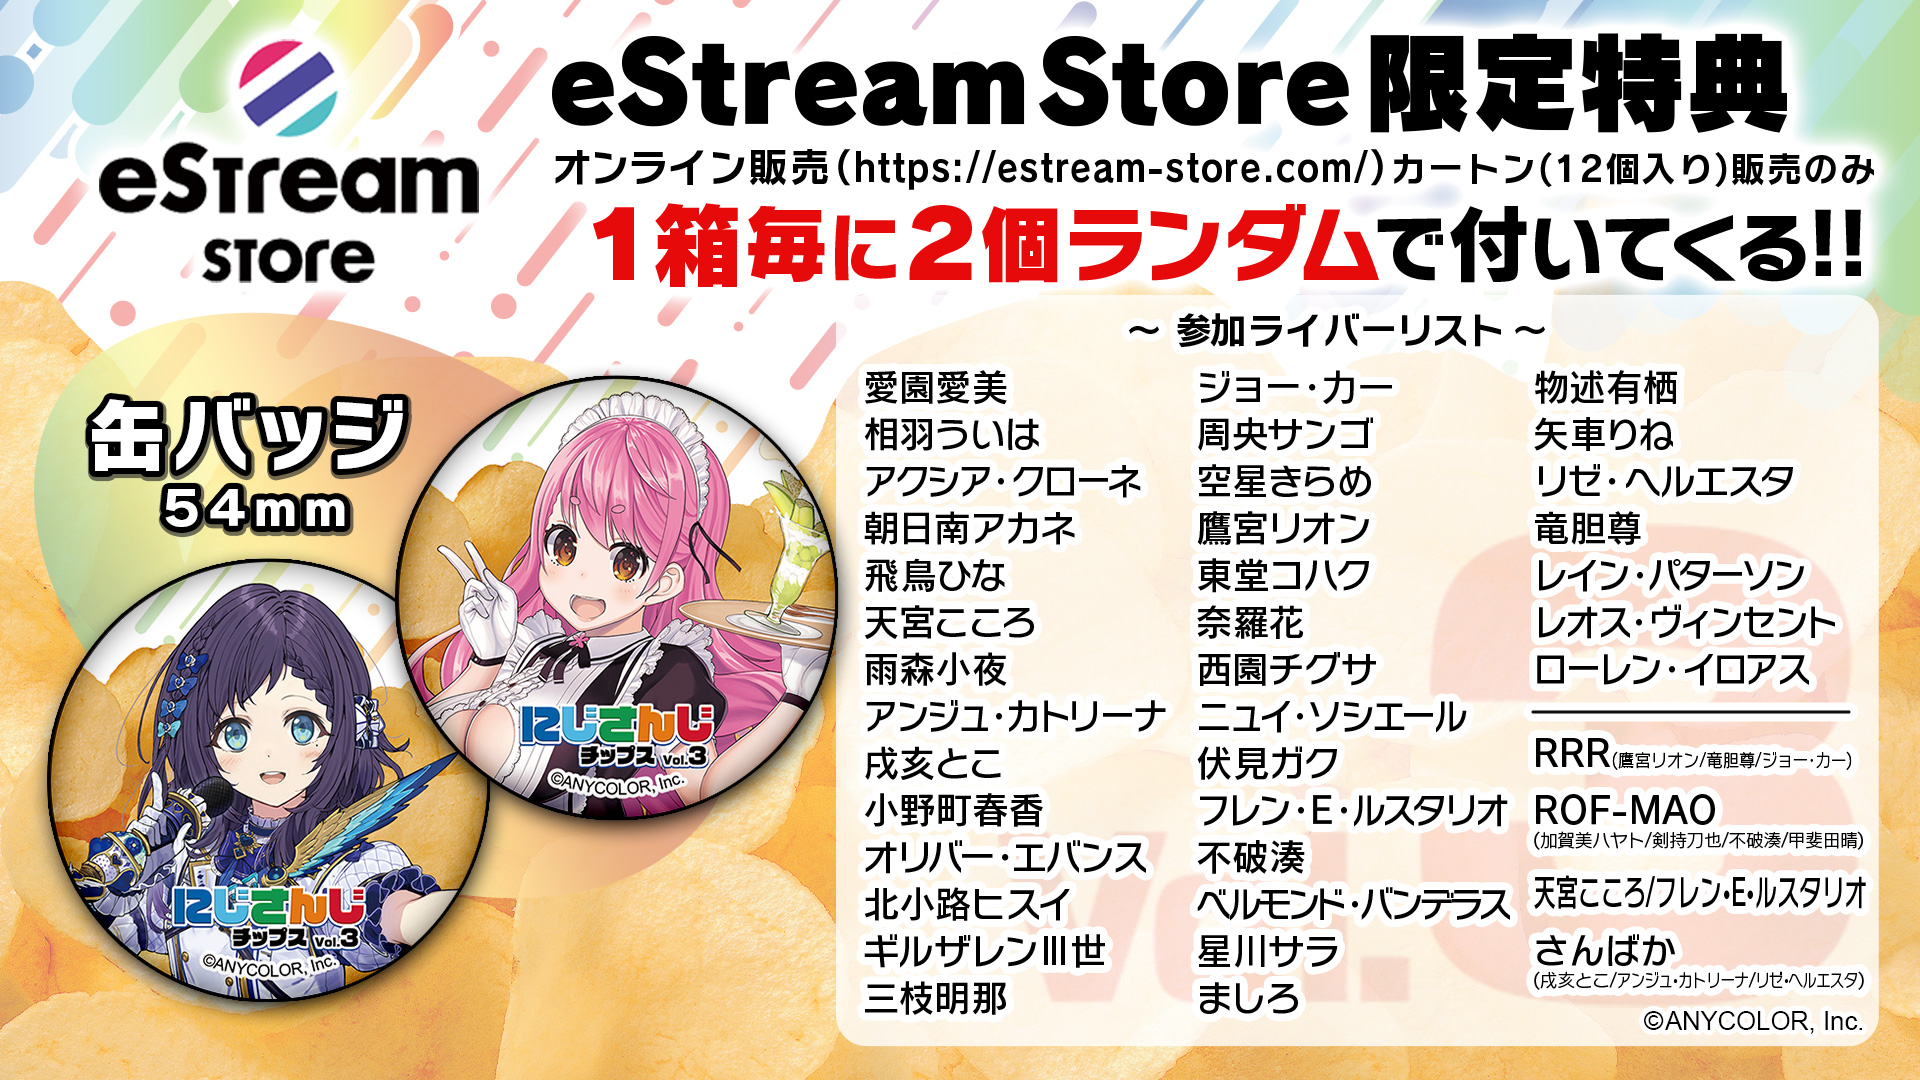 eStream Store